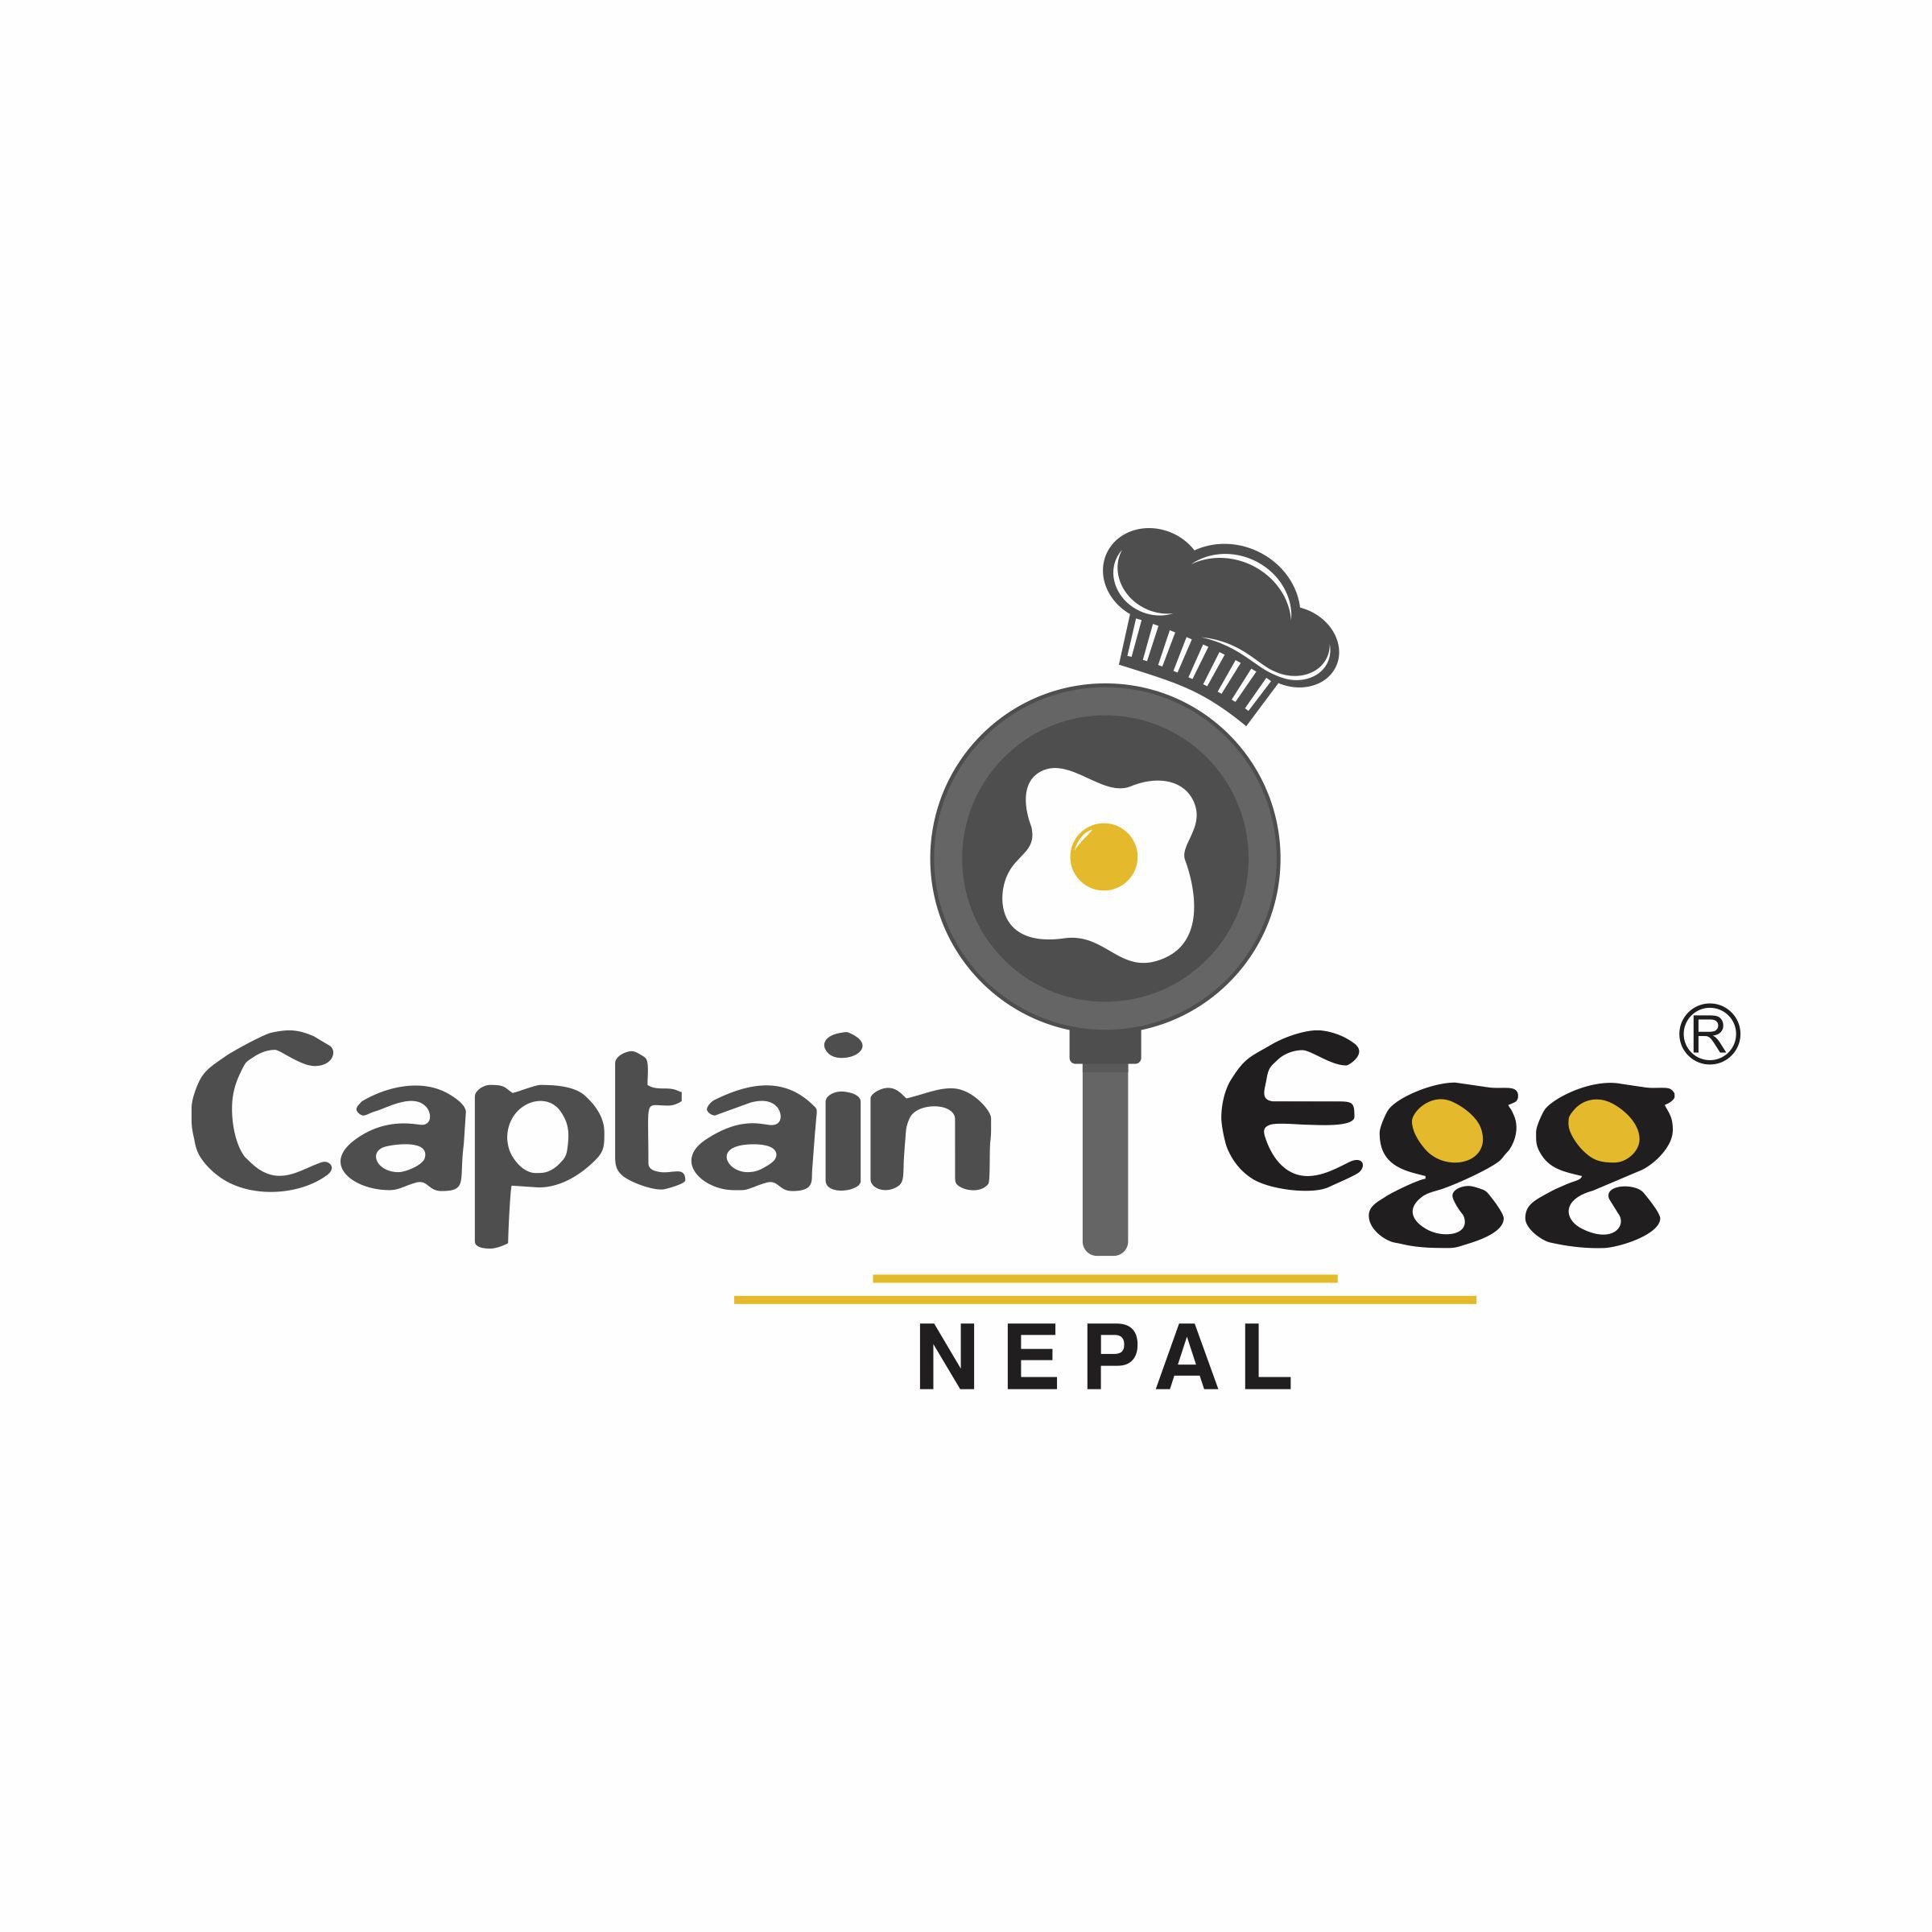 Captain Egg